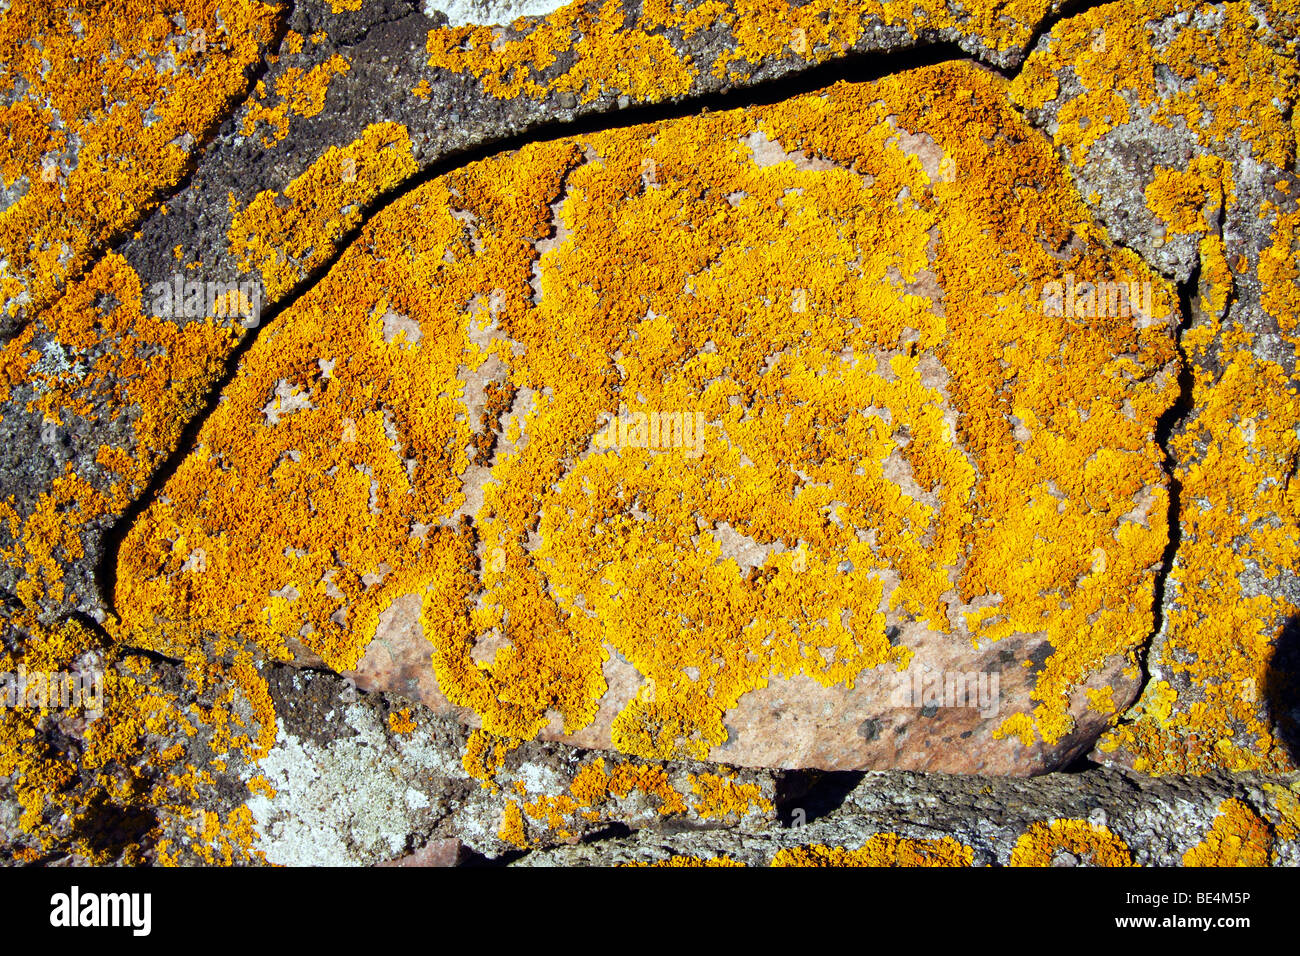 Comune lichene arancione, giallo Lichen, Marittimo Sunburst (Lichene Xanthoria parietina) che cresce su un vecchio muro di pietra, foliose lichen Foto Stock